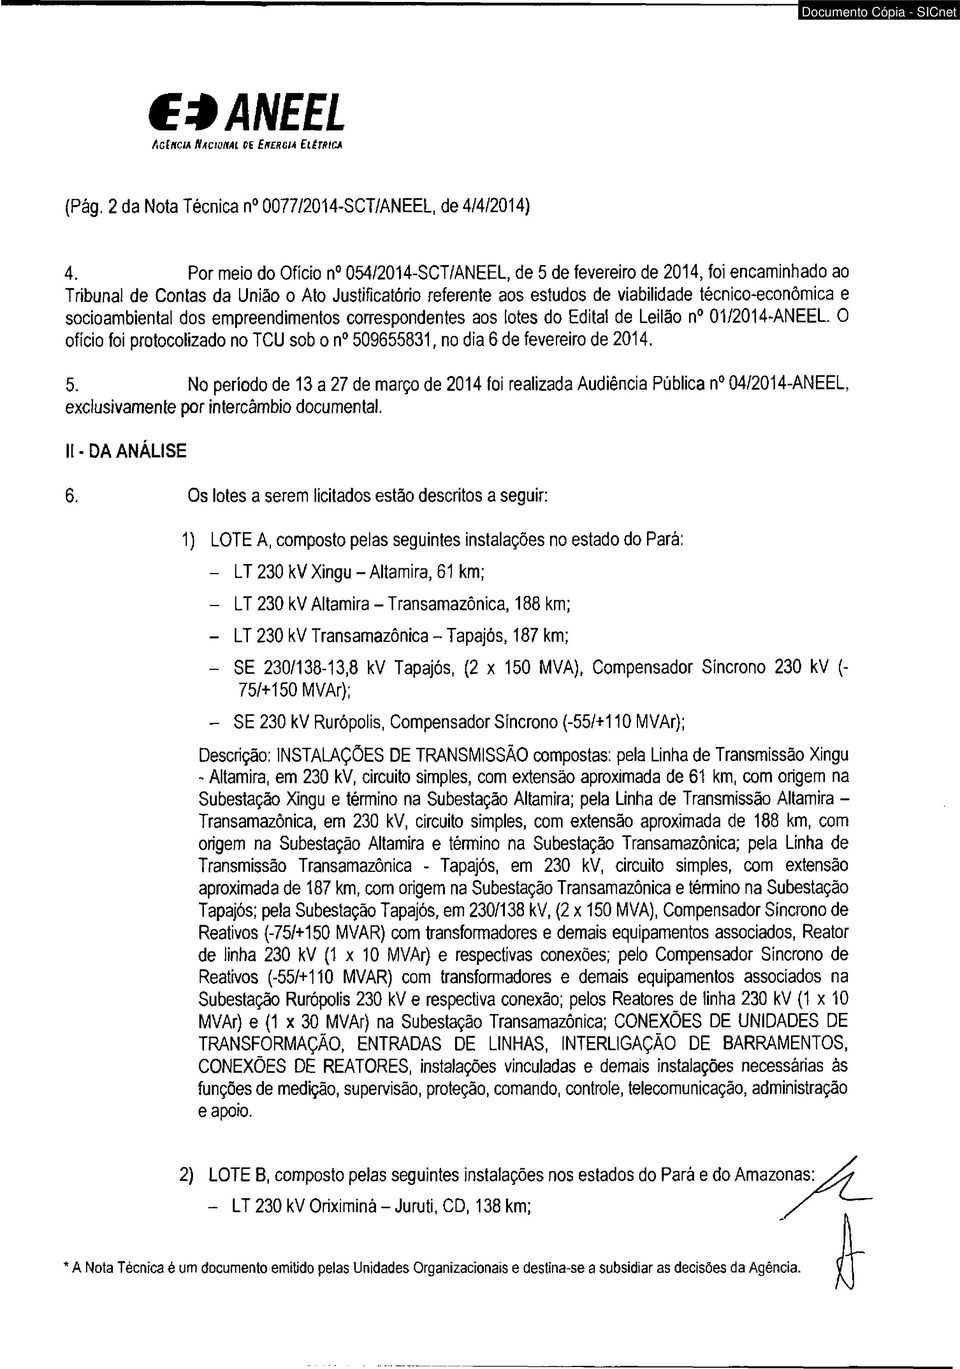 socioambiental dos empreendimentos correspondentes aos lotes do Edital de Leilão n 01/2014-ANEEL. O ofício foi protocolizado no TCU sob o n 50